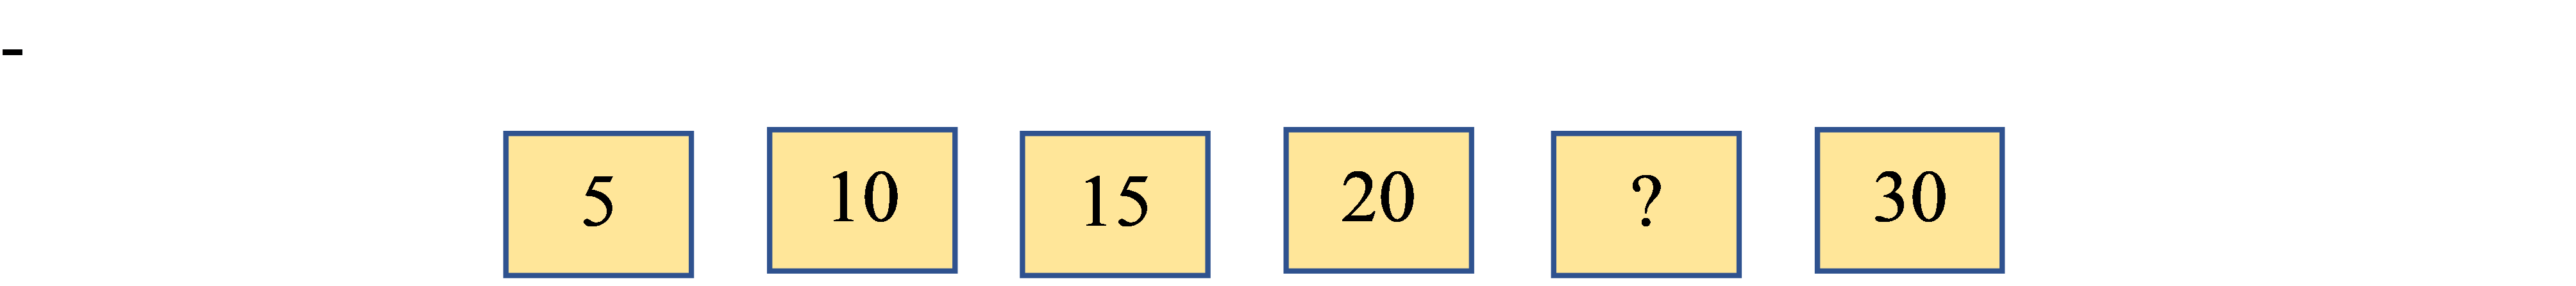 Điền số thích hợp vào ô trống để hoàn thành dãy số sau: (ảnh 1)